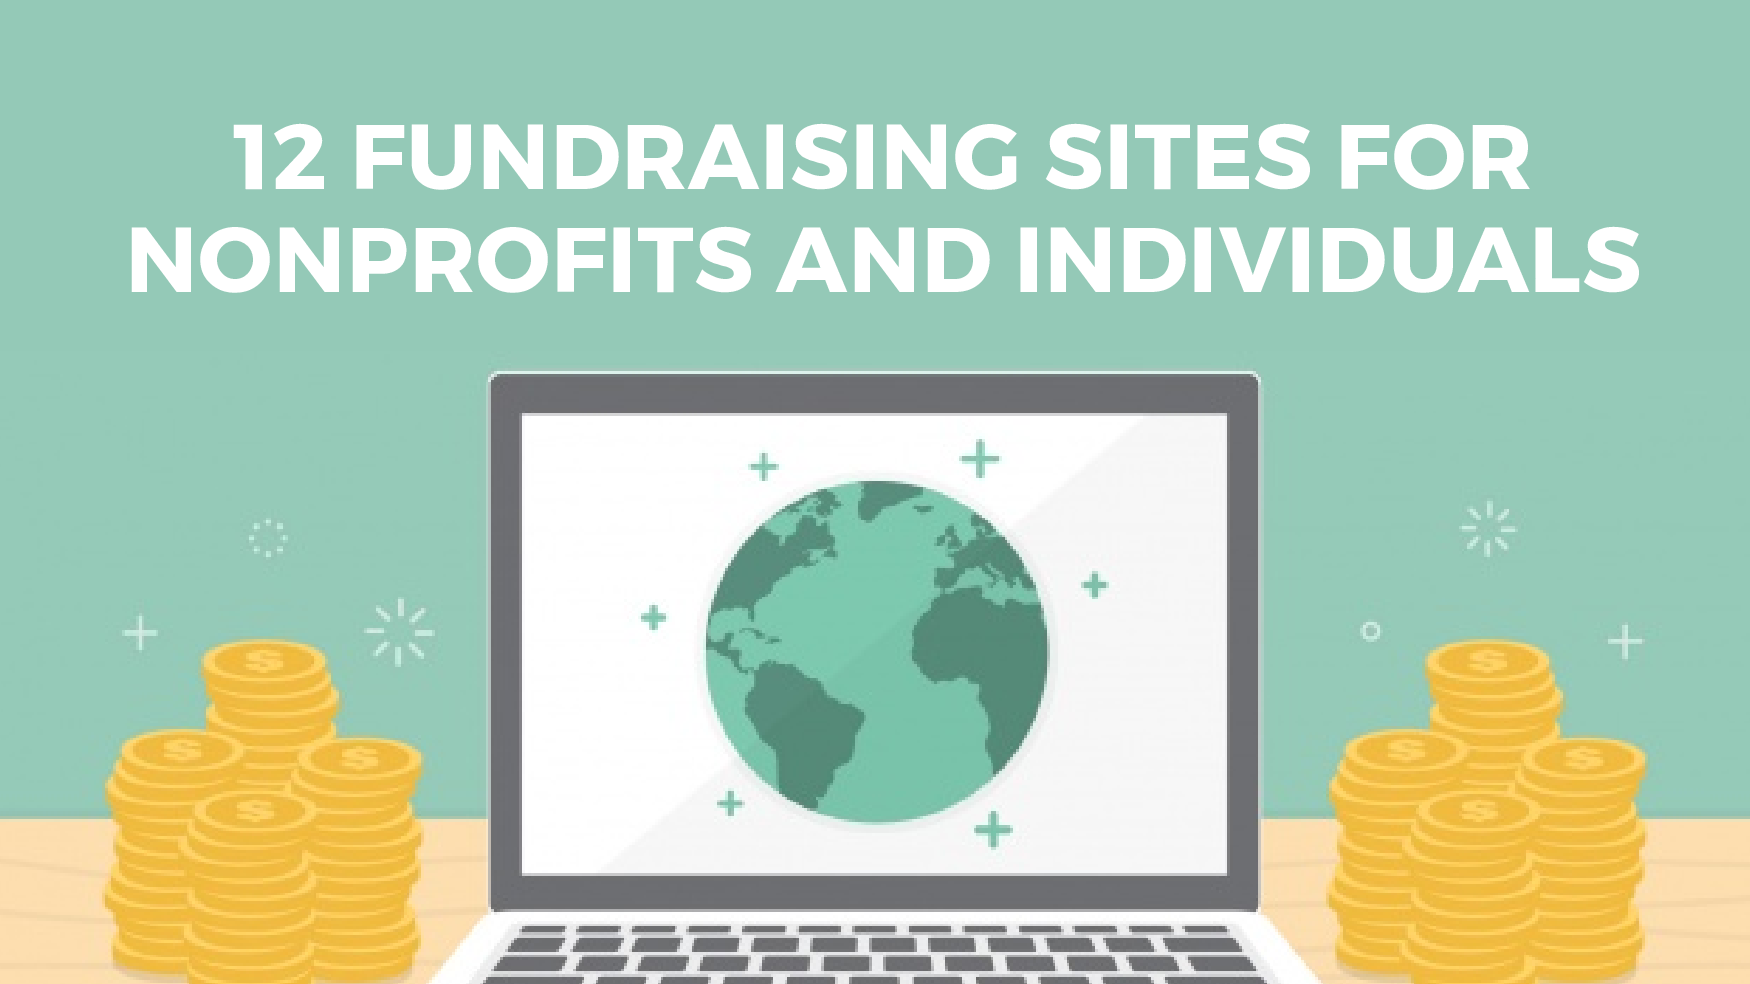 Fundraising sites